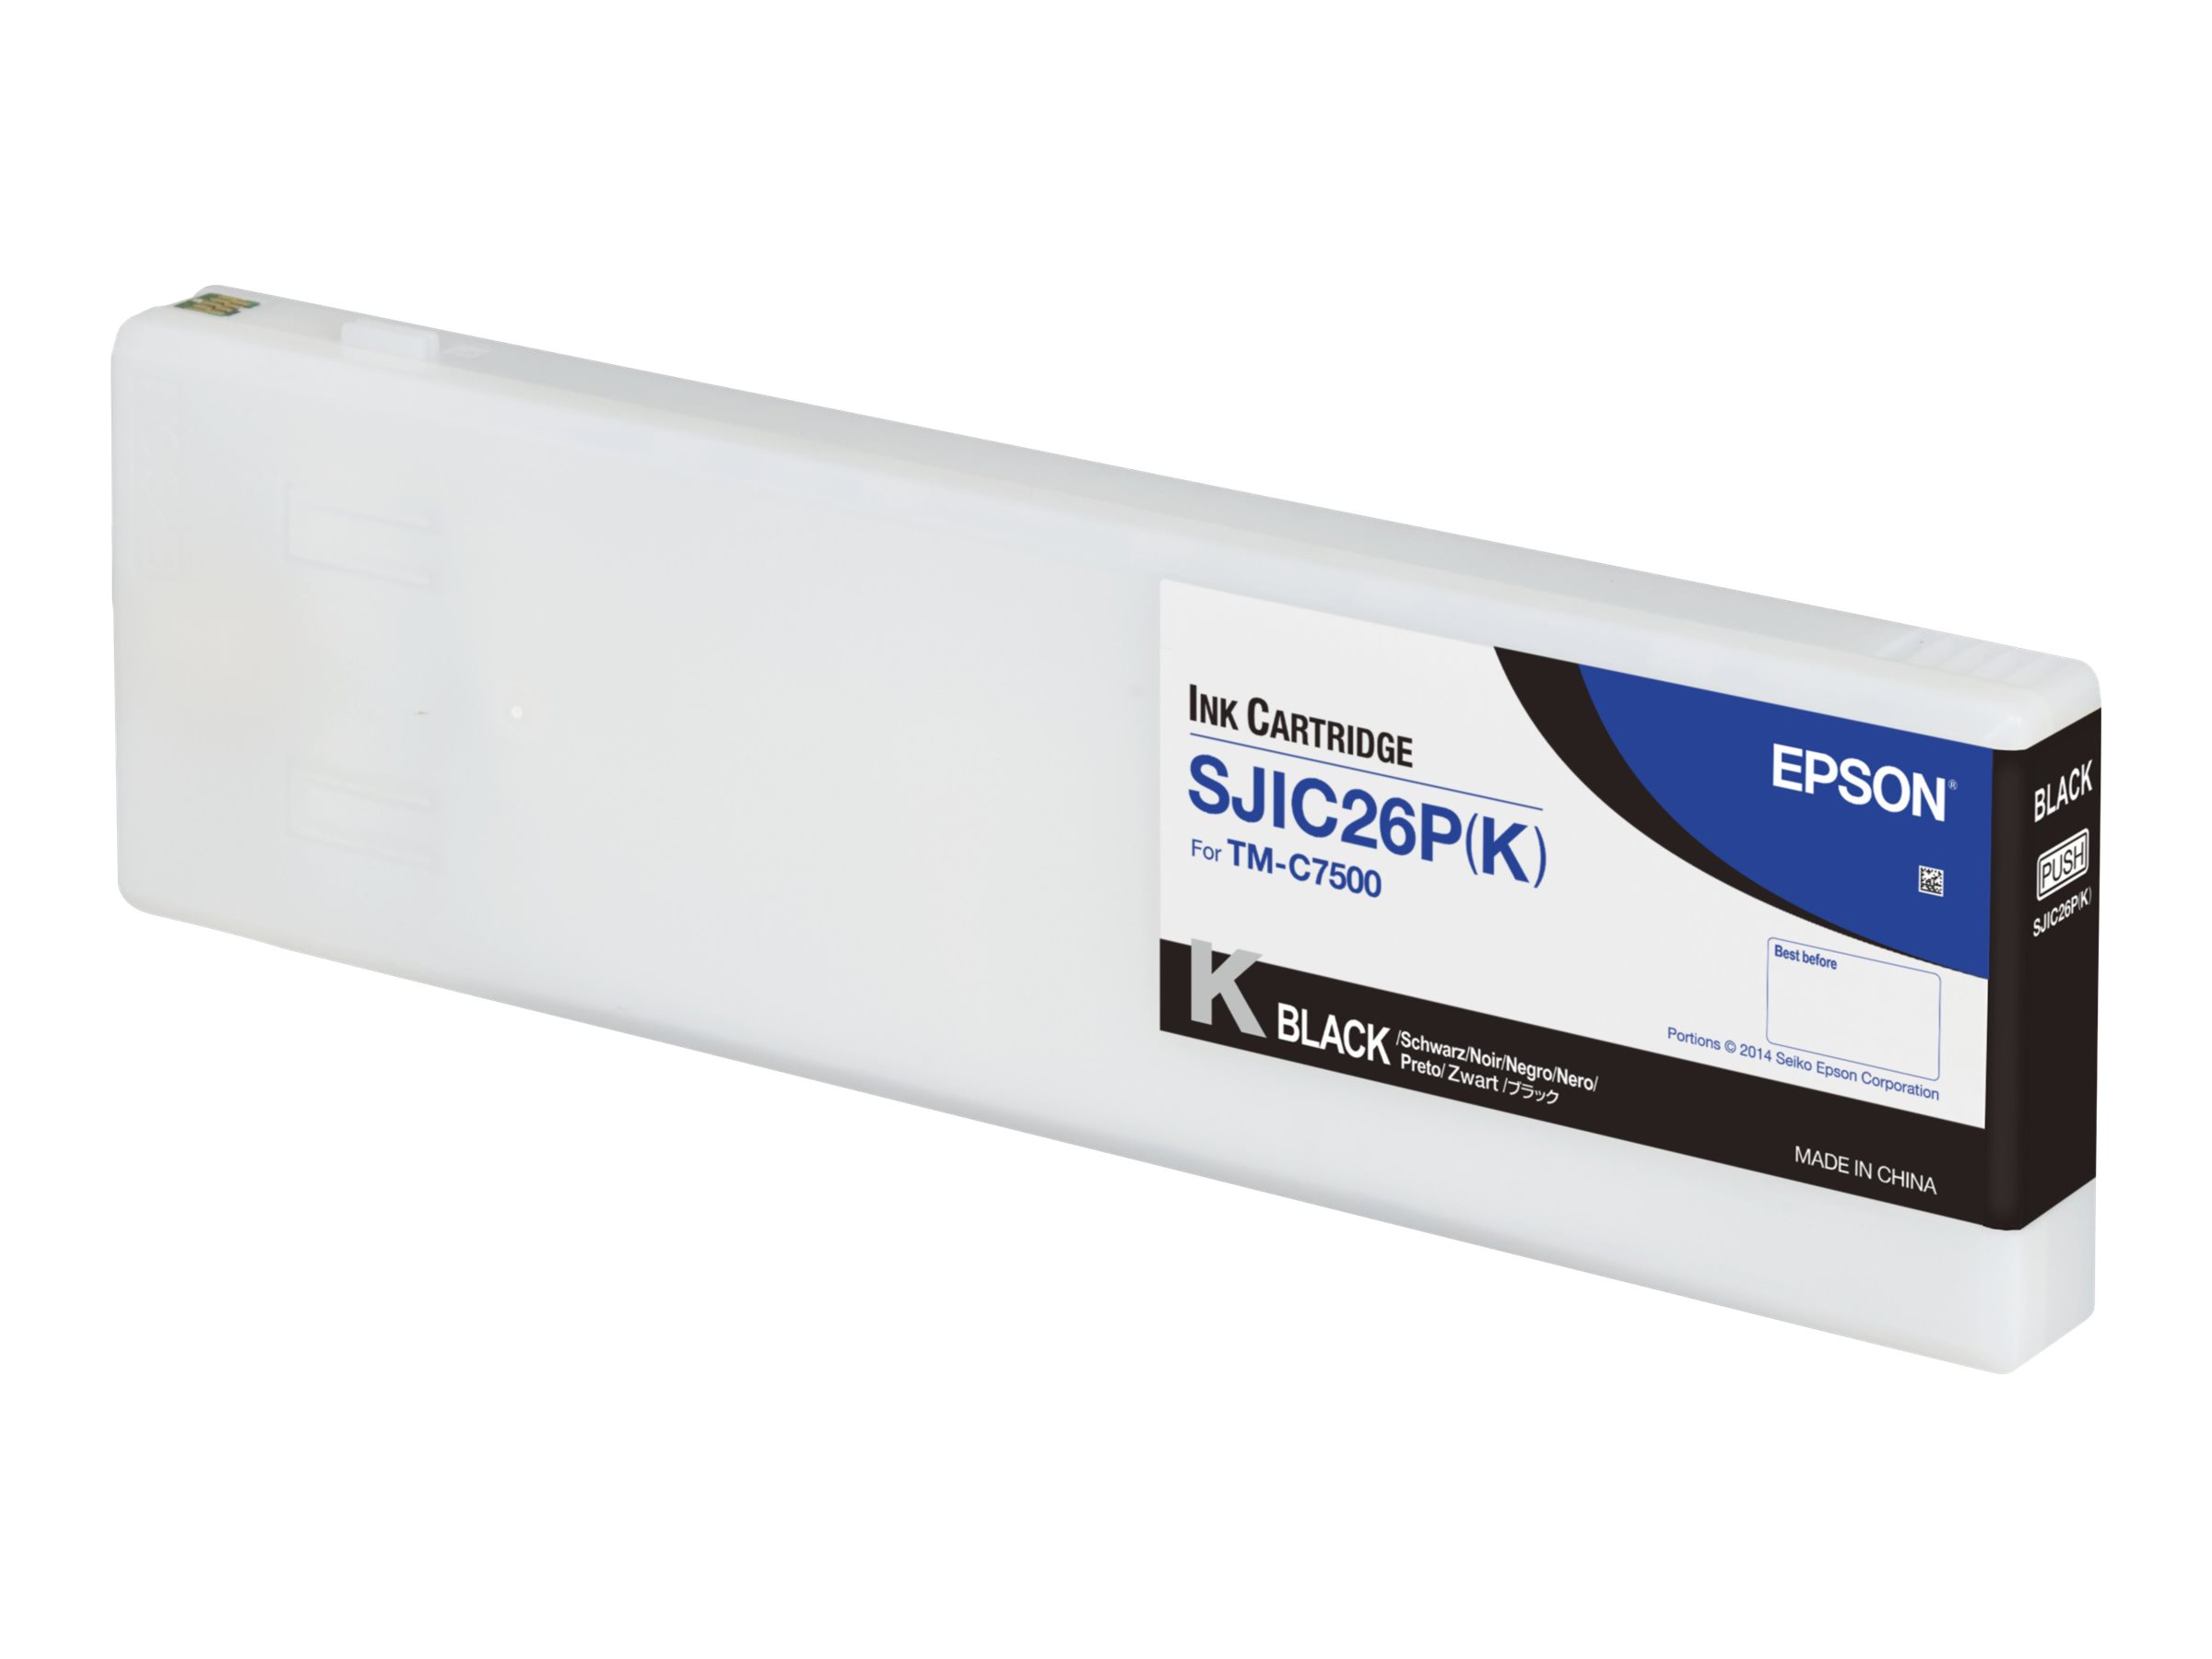 Epson SJIC26P(K) - 295.2 ml - noir - original - cartouche d'encre - pour ColorWorks TM-C7500 - C33S020618 - Cartouches d'imprimante